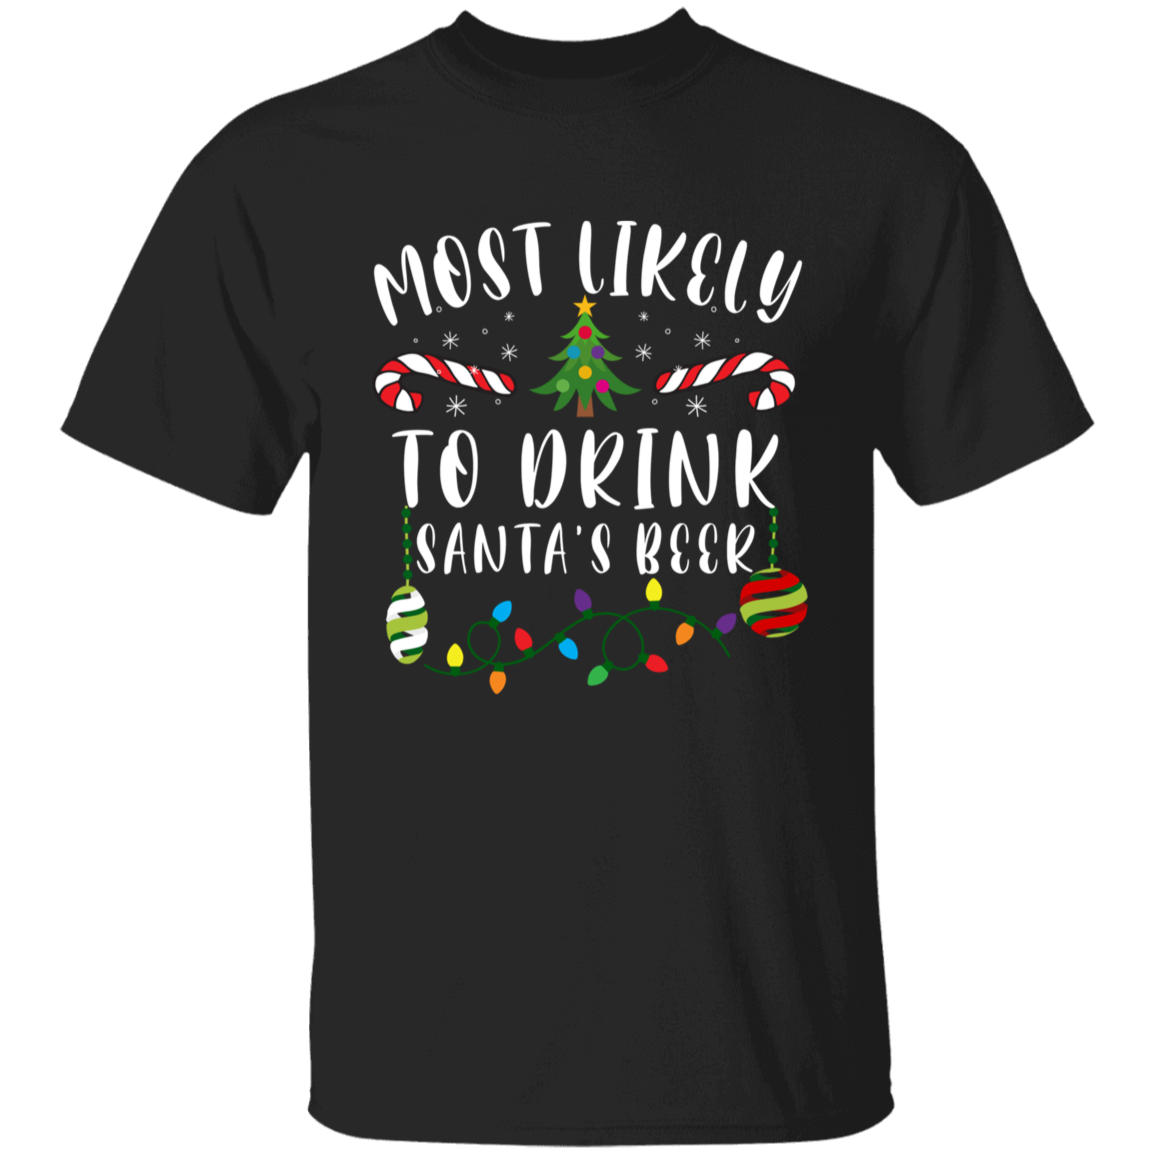 To Drink Santa's Beer